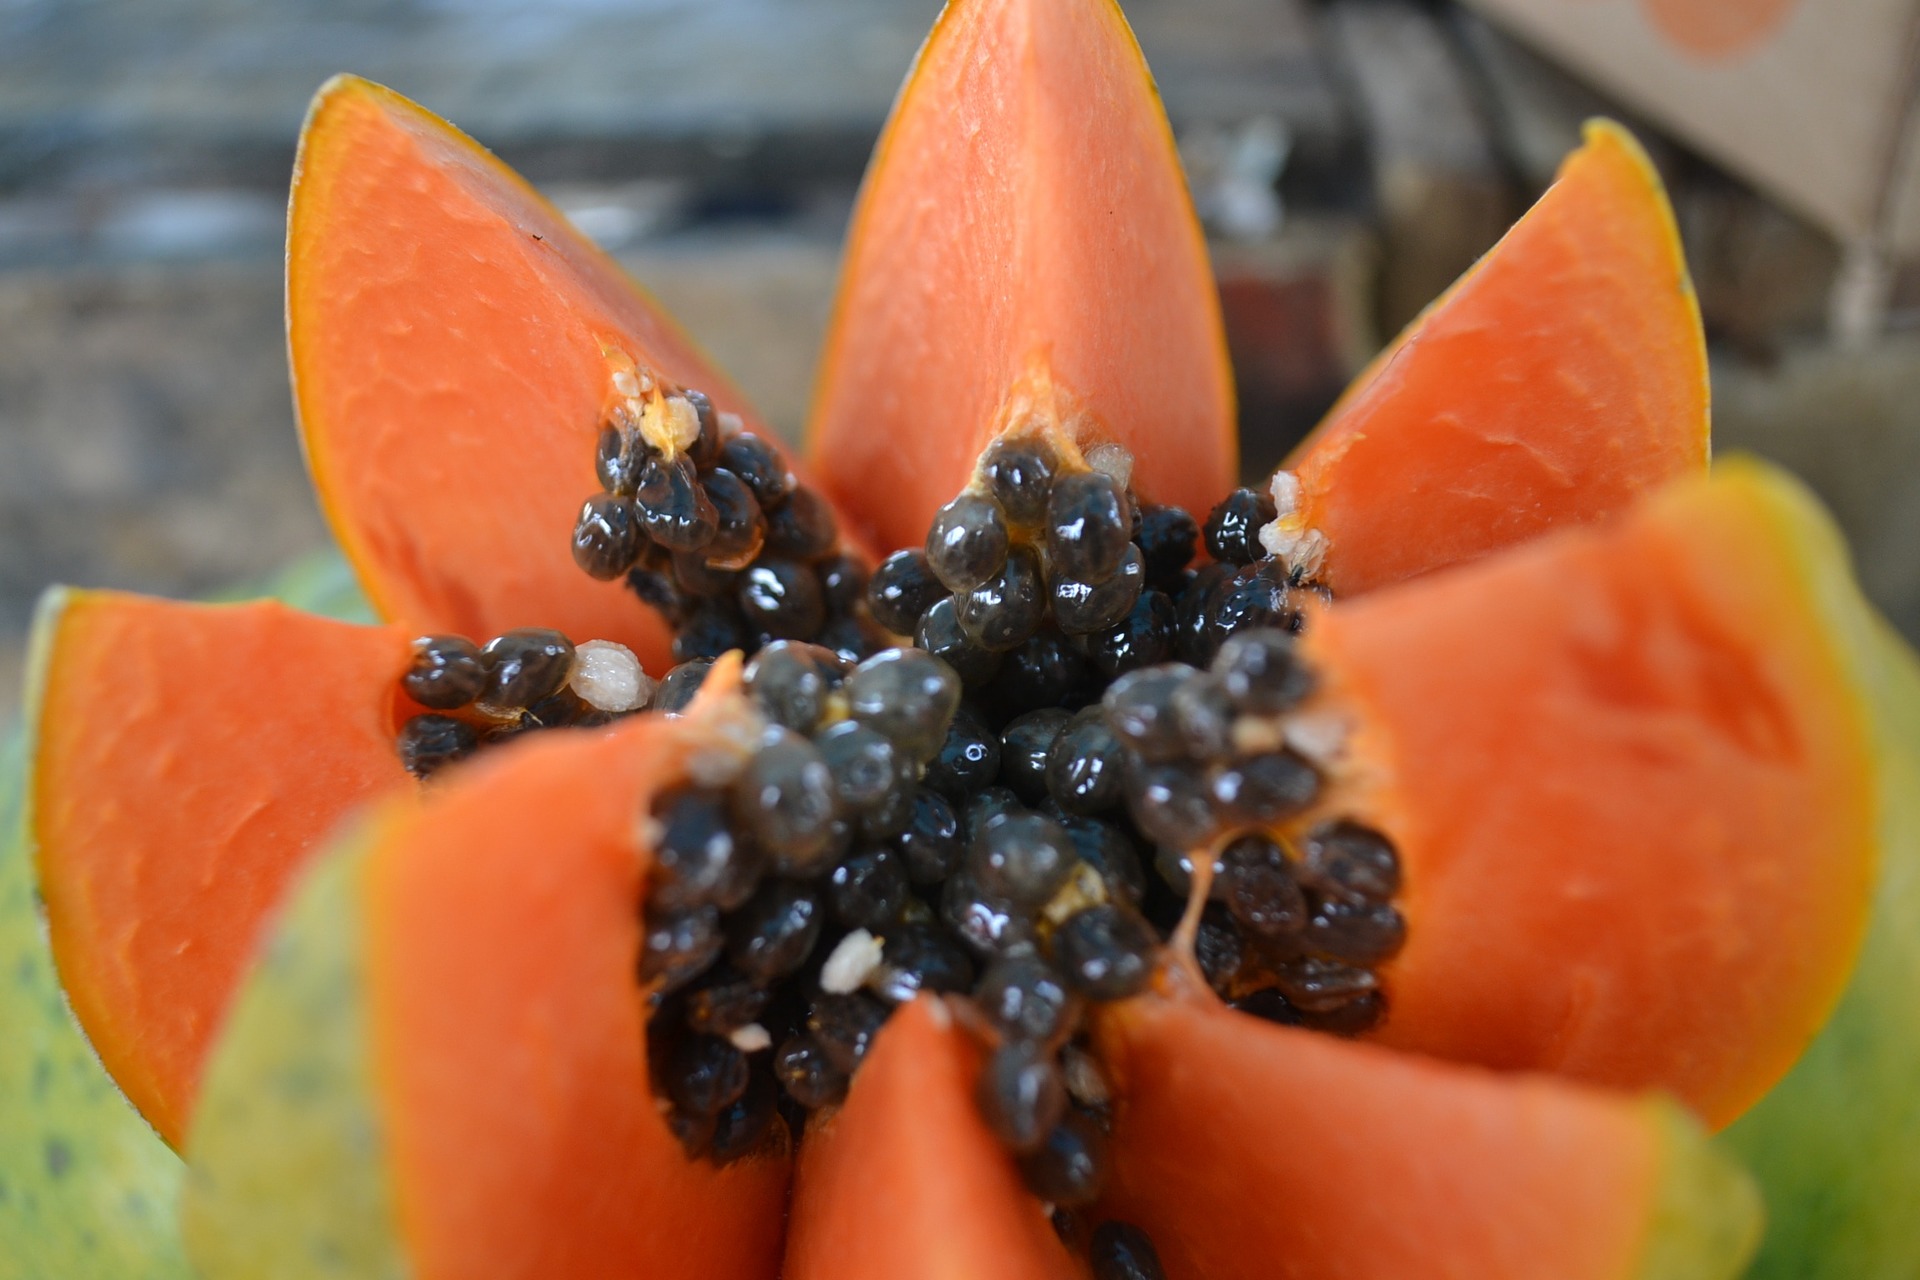 Morceau de papaye: bienfaits et effets secondaires de la papaïne, son principal constituant.